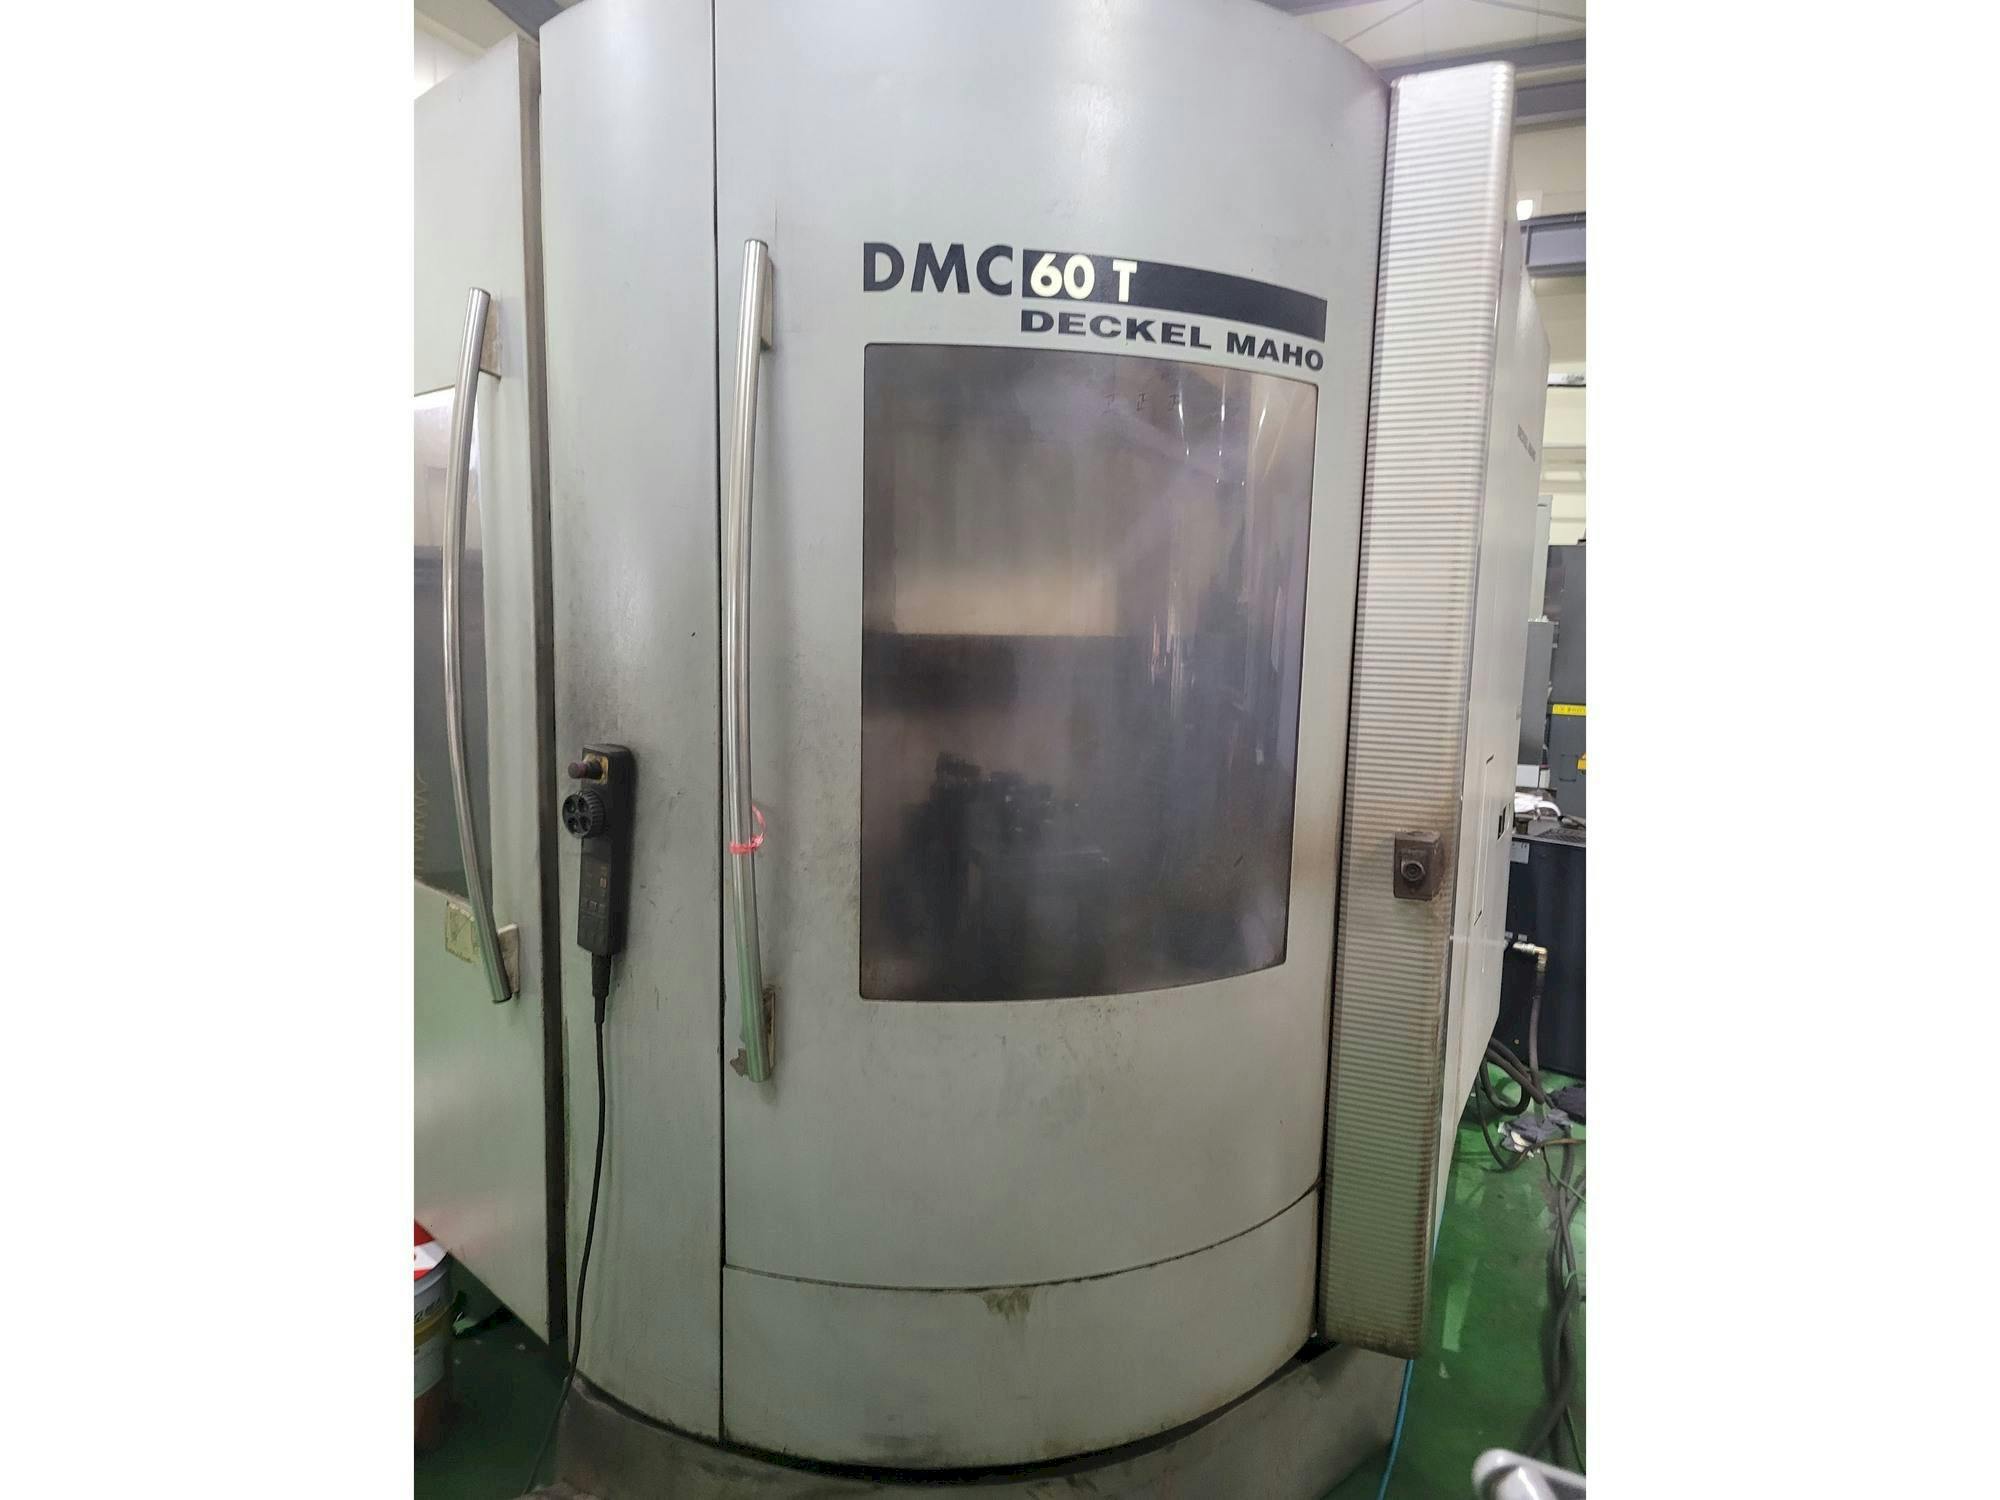 Frontansicht der DECKEL MAHO DMC 60 T  Maschine